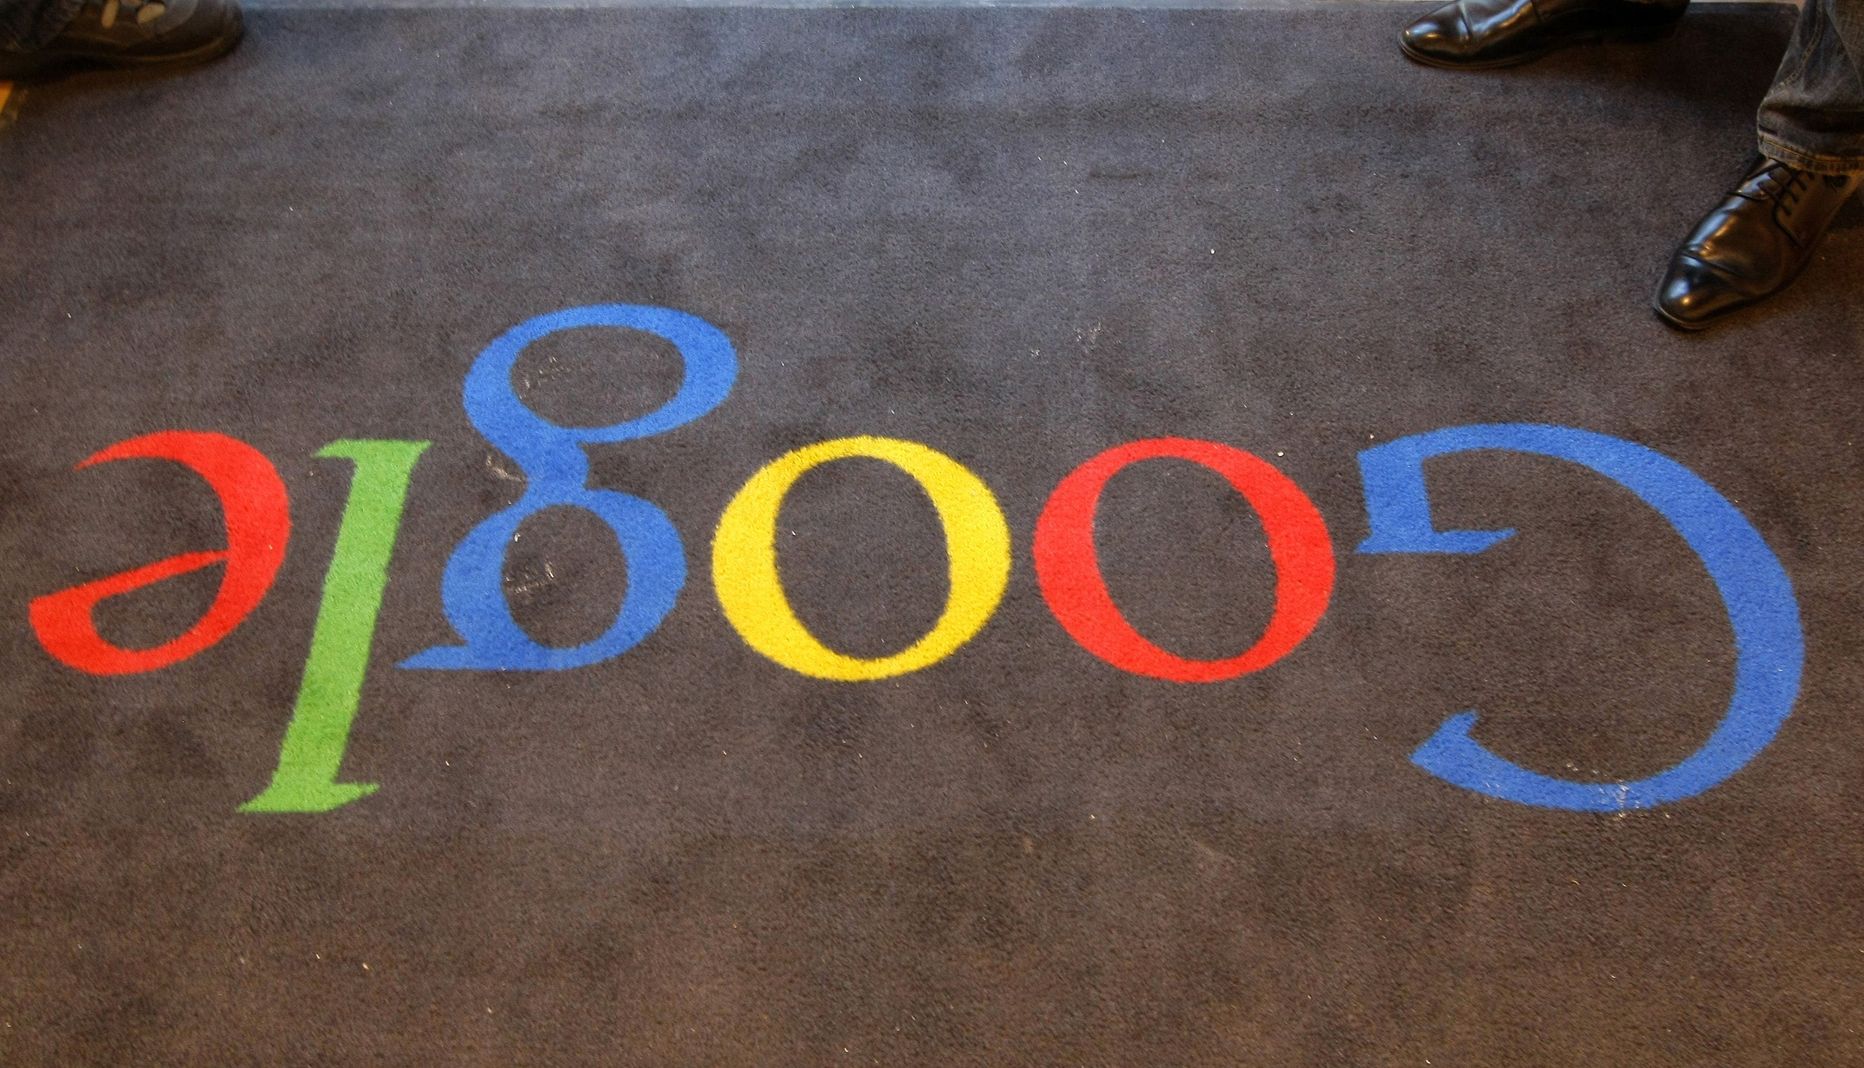 Google'i logo ettevõtte Prantsusmaa kontori vaibal